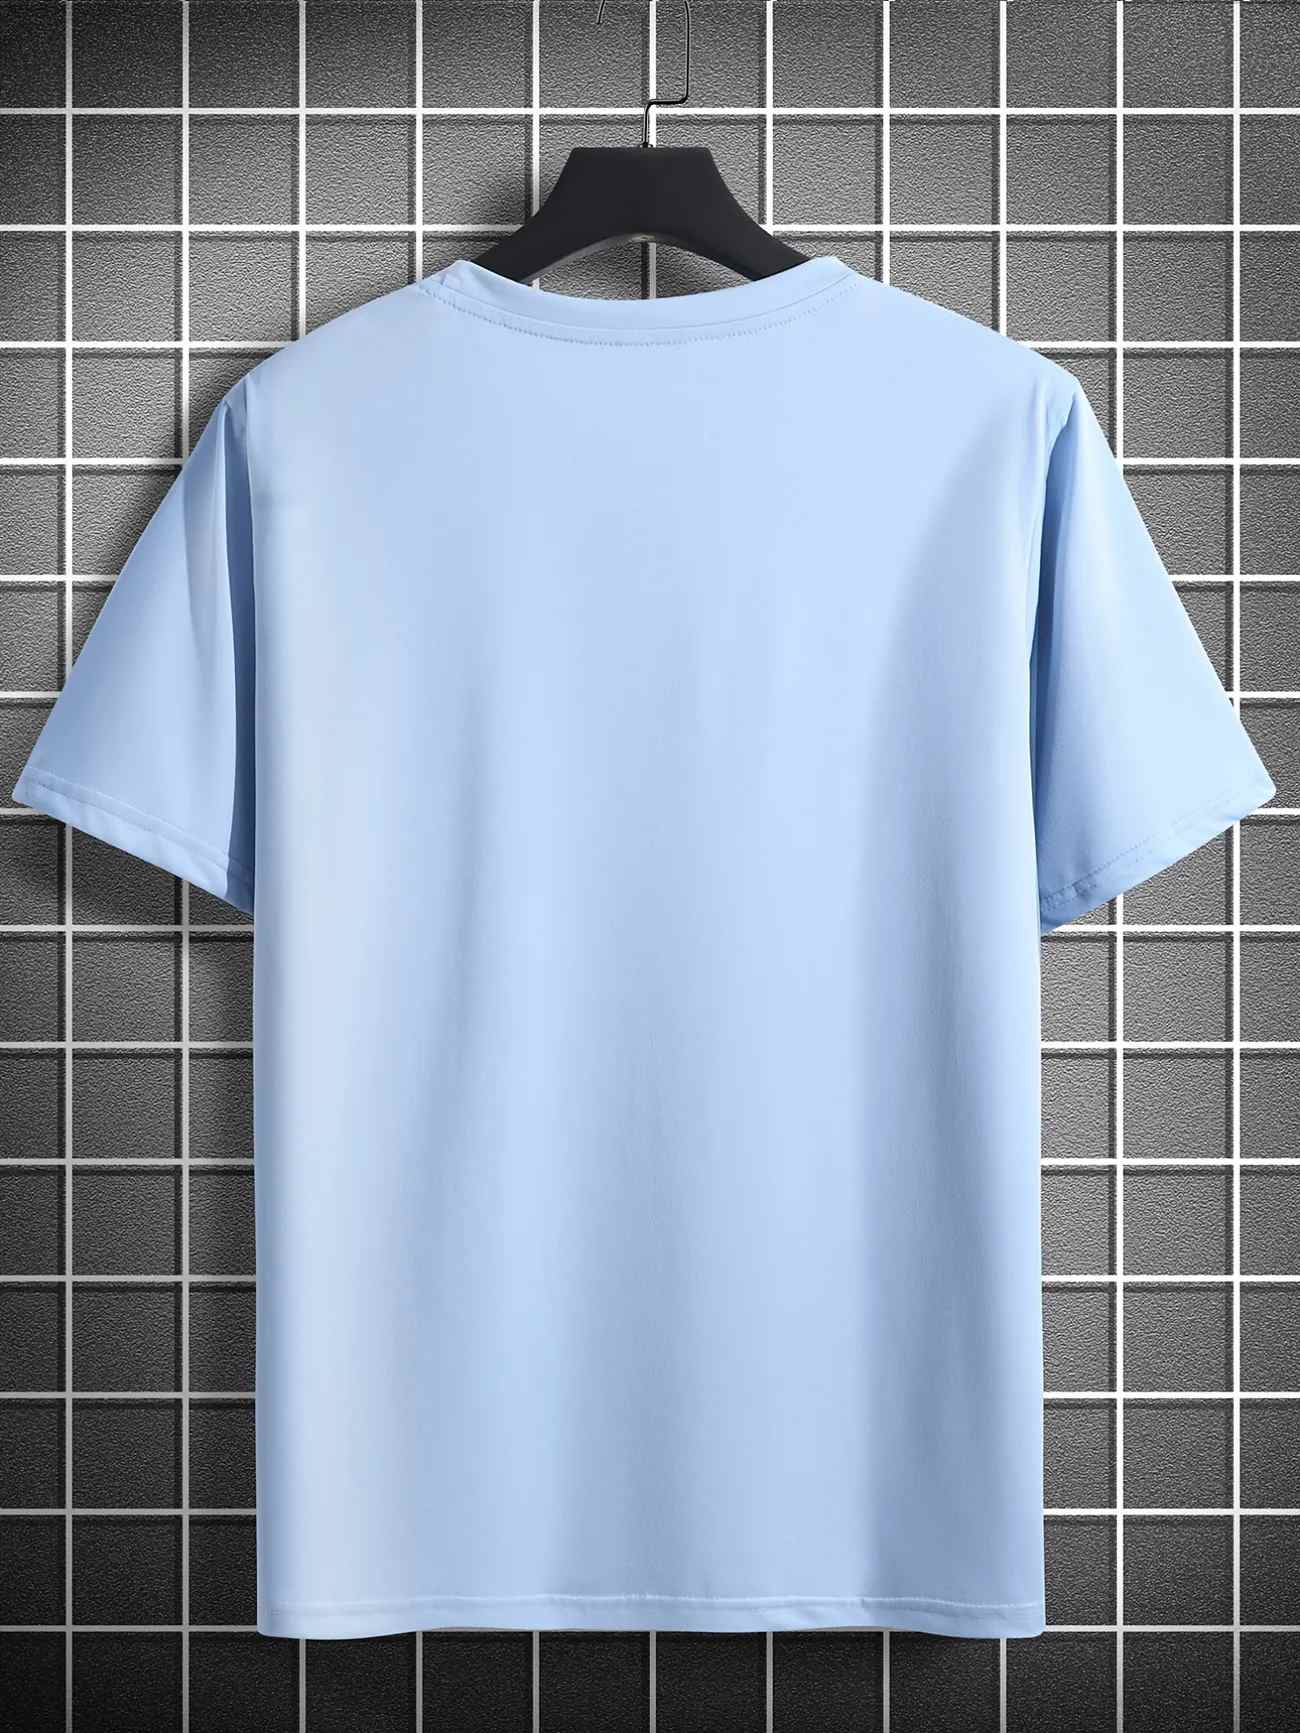 Mens Cotton Sticker Printed T-Shirt TTMPS80 - Light Blue